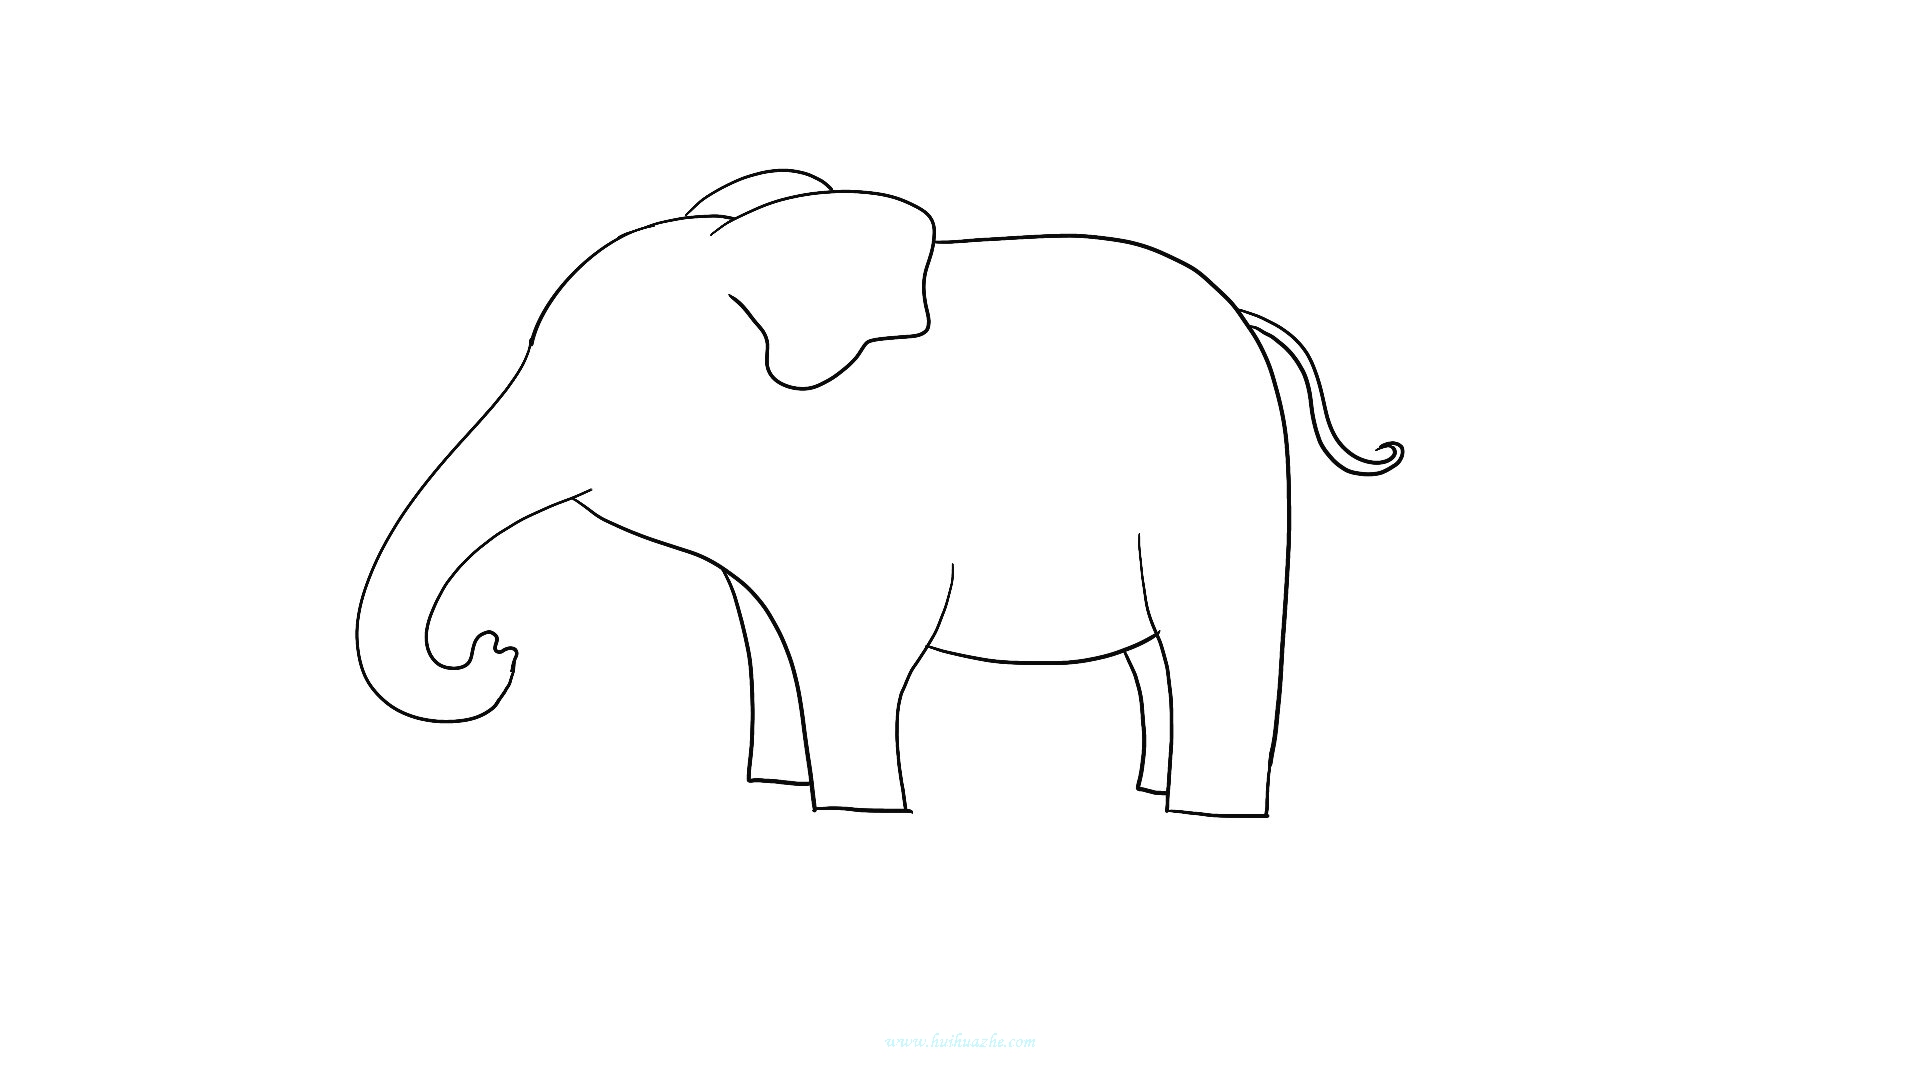 少儿漂亮简笔画 实用简笔画大象的画法步骤图（高中生学画画专业有什么好处） - 有点网 - 好手艺